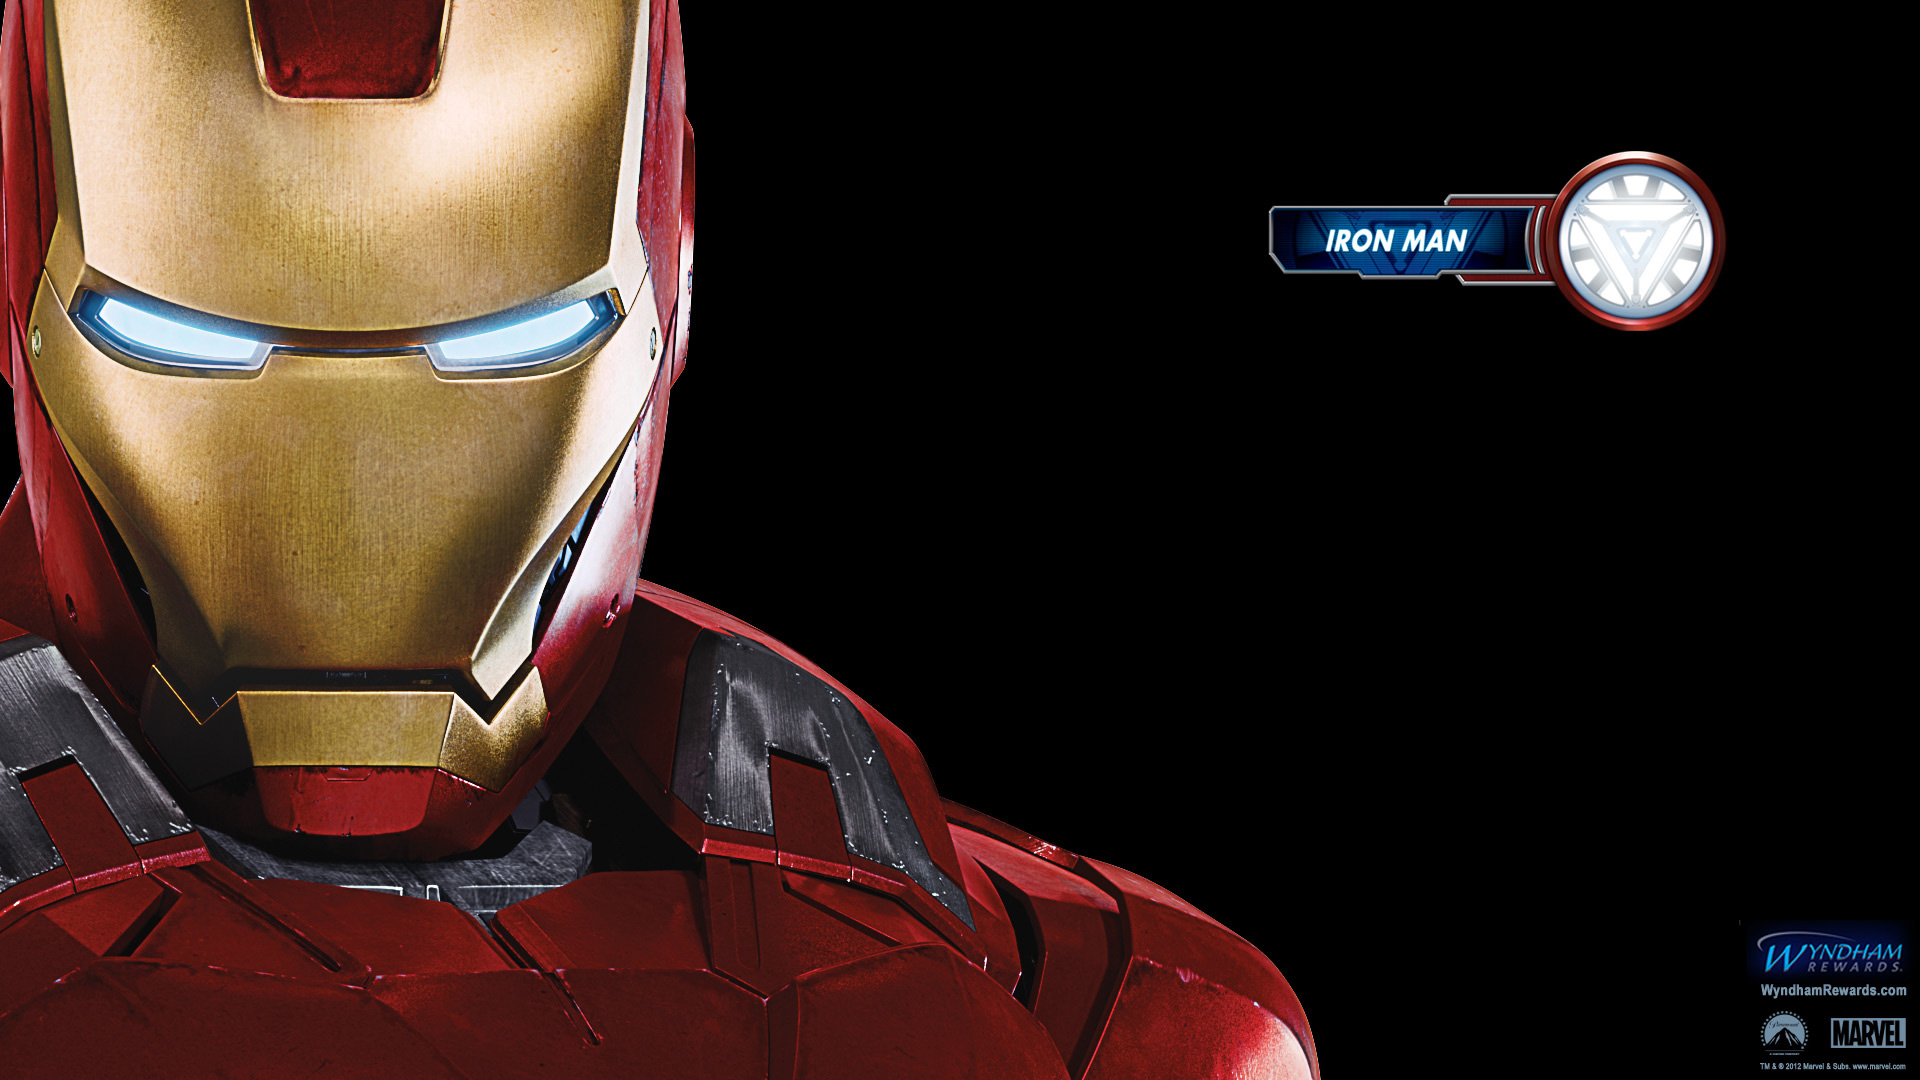 Iron Man Avengers The Movie Full HD Wallpaper Tony Stark